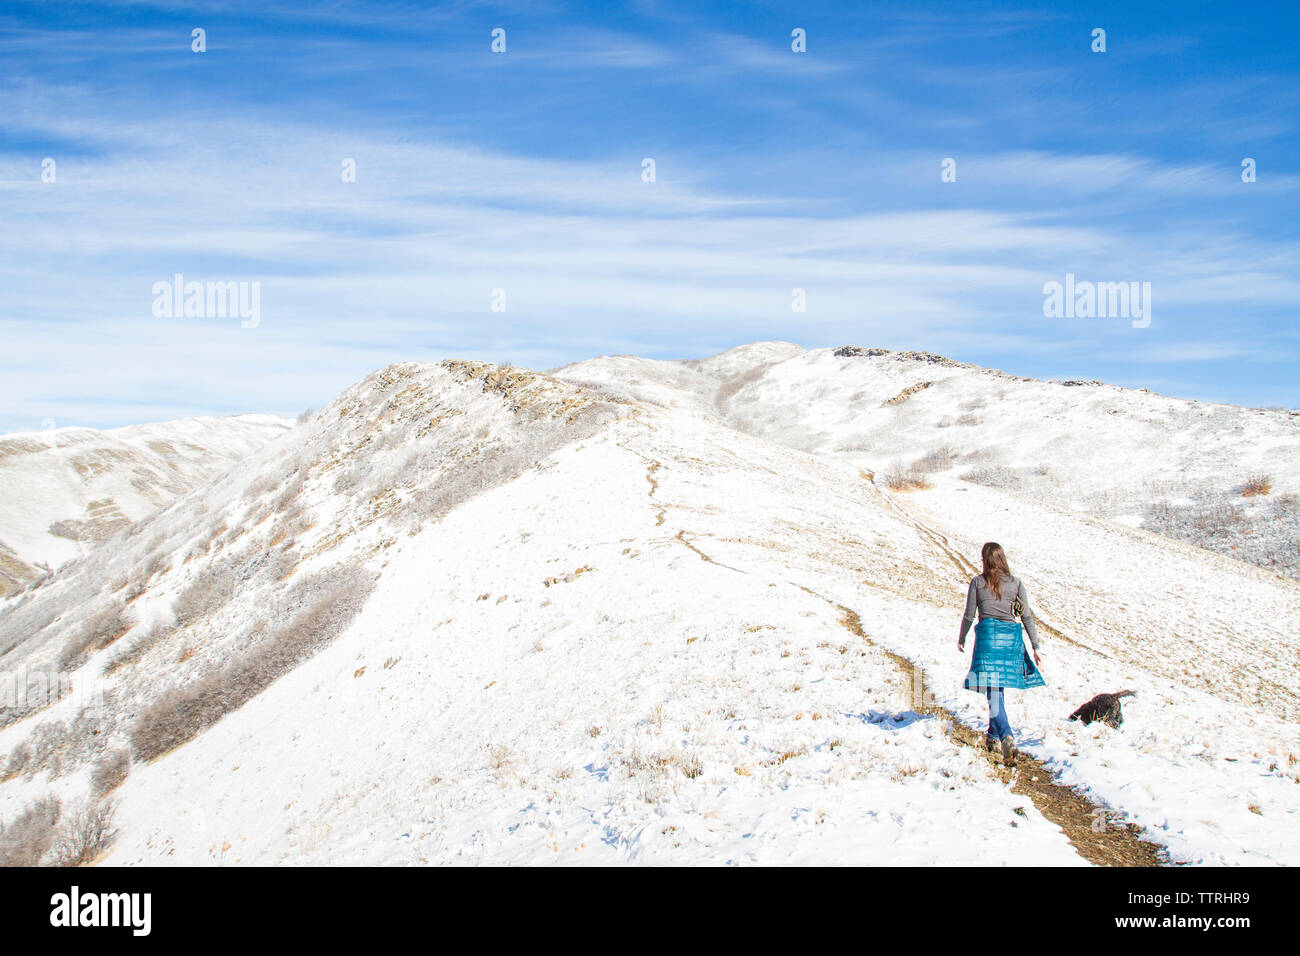 Vue arrière du woman walking on mountain contre ciel nuageux au cours de l'hiver Banque D'Images